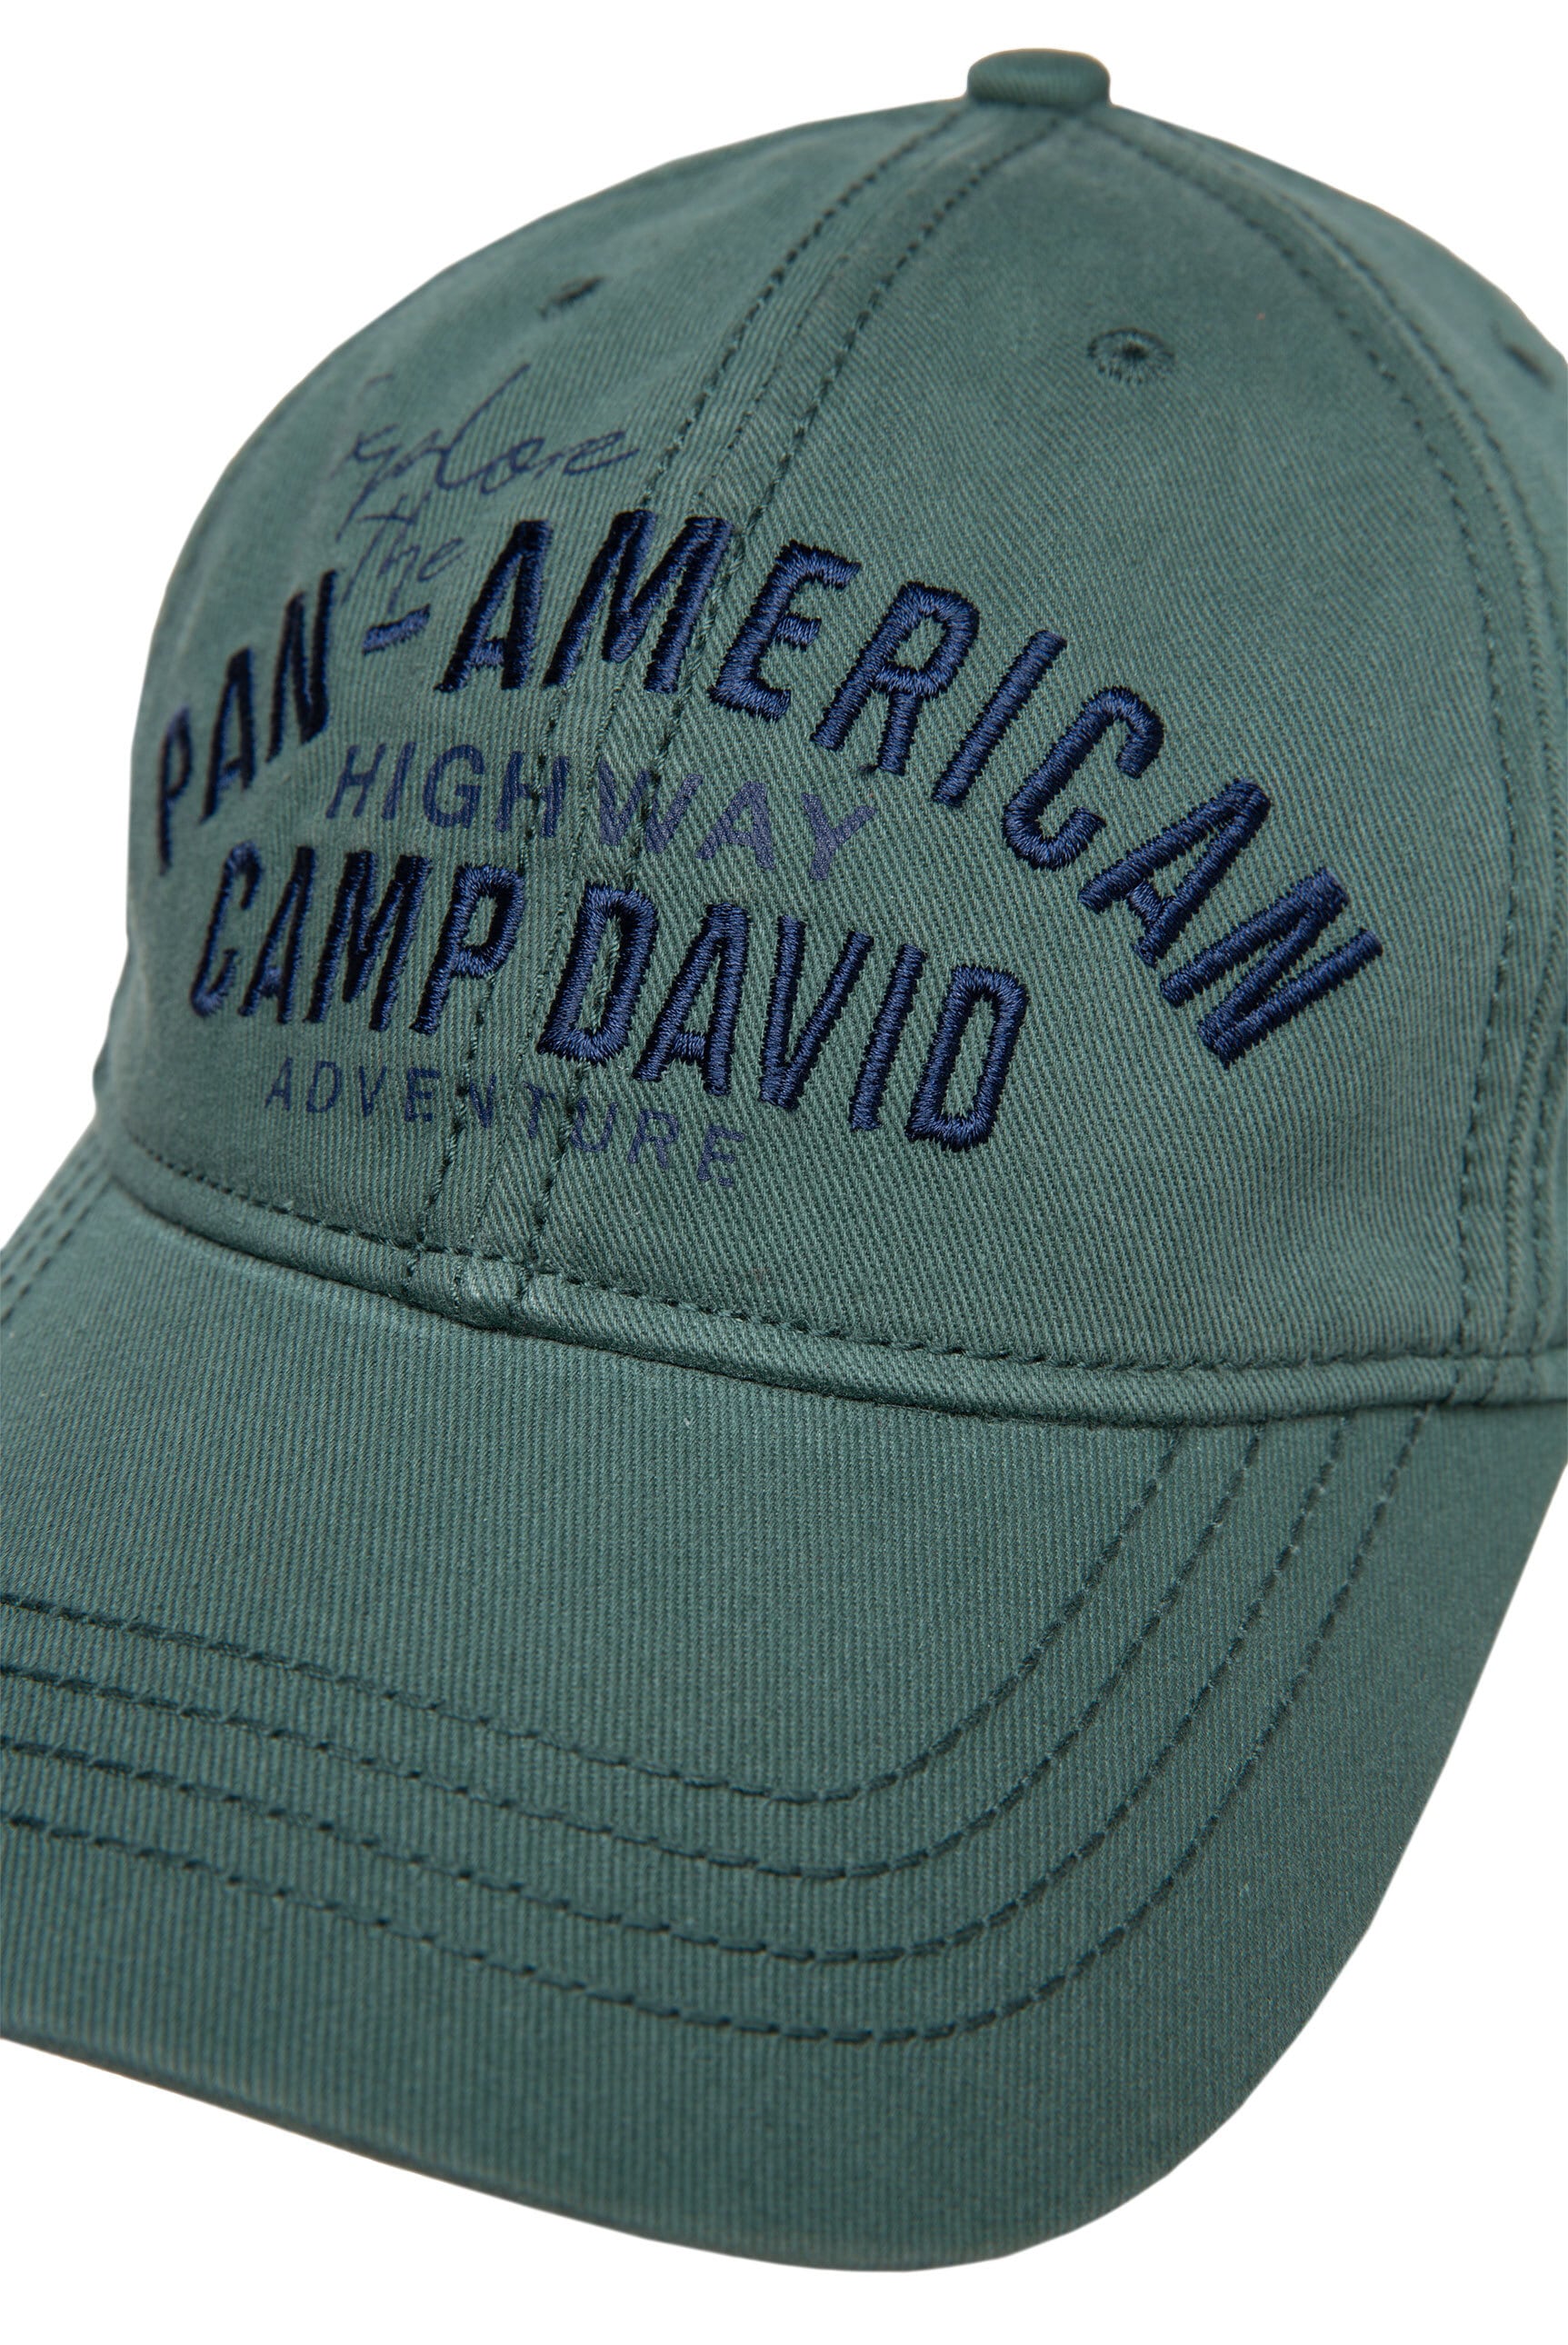 CAMP DAVID Baseball Cap, mit Klipp-Verschluss online kaufen | I'm walking